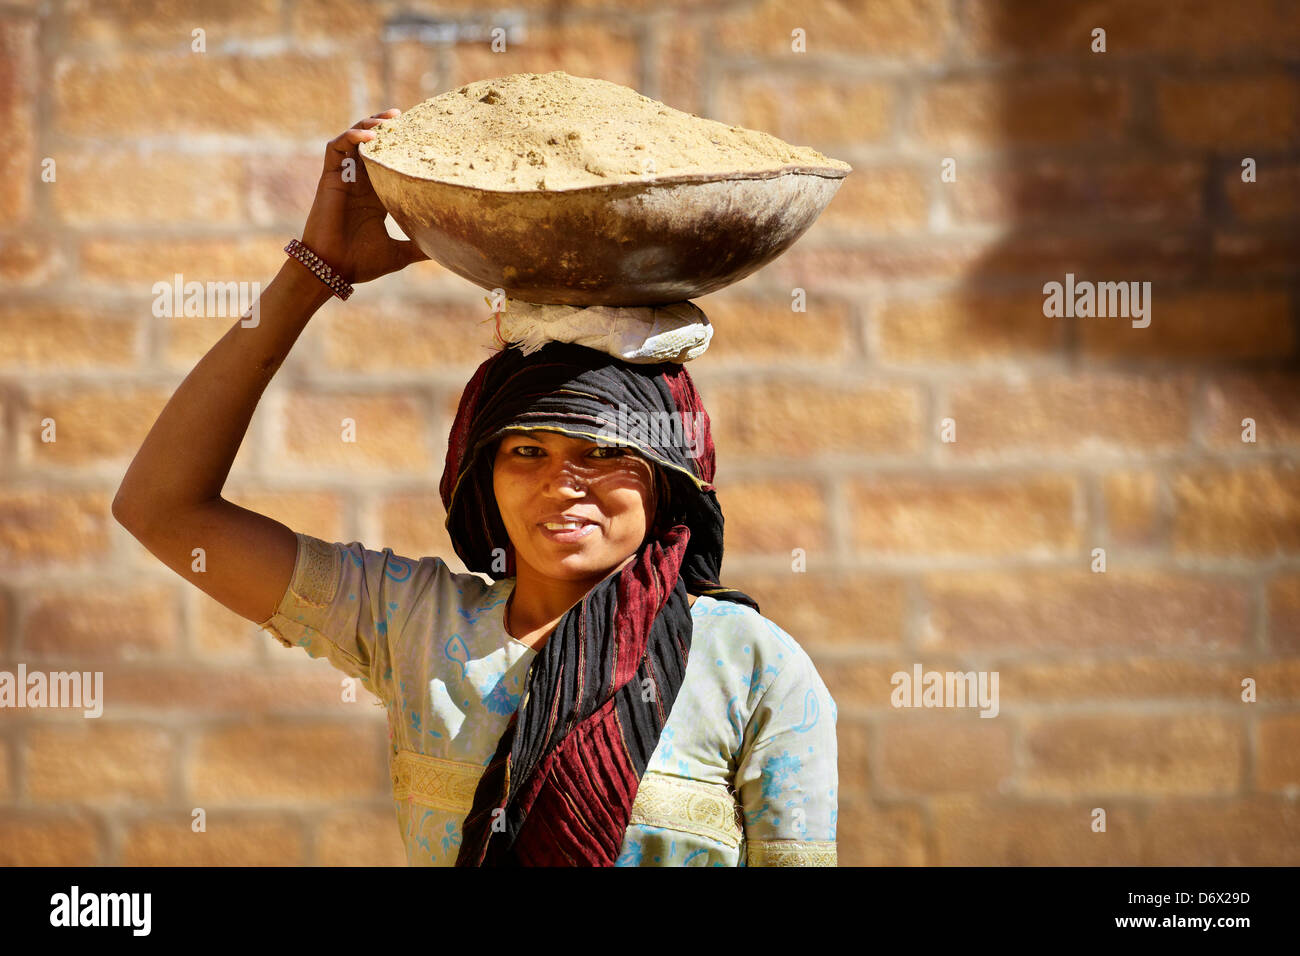 Street Scene - retrato de una mujer sonriente hindú india llevando una cesta sobre su cabeza, Jaisalmer, India Foto de stock